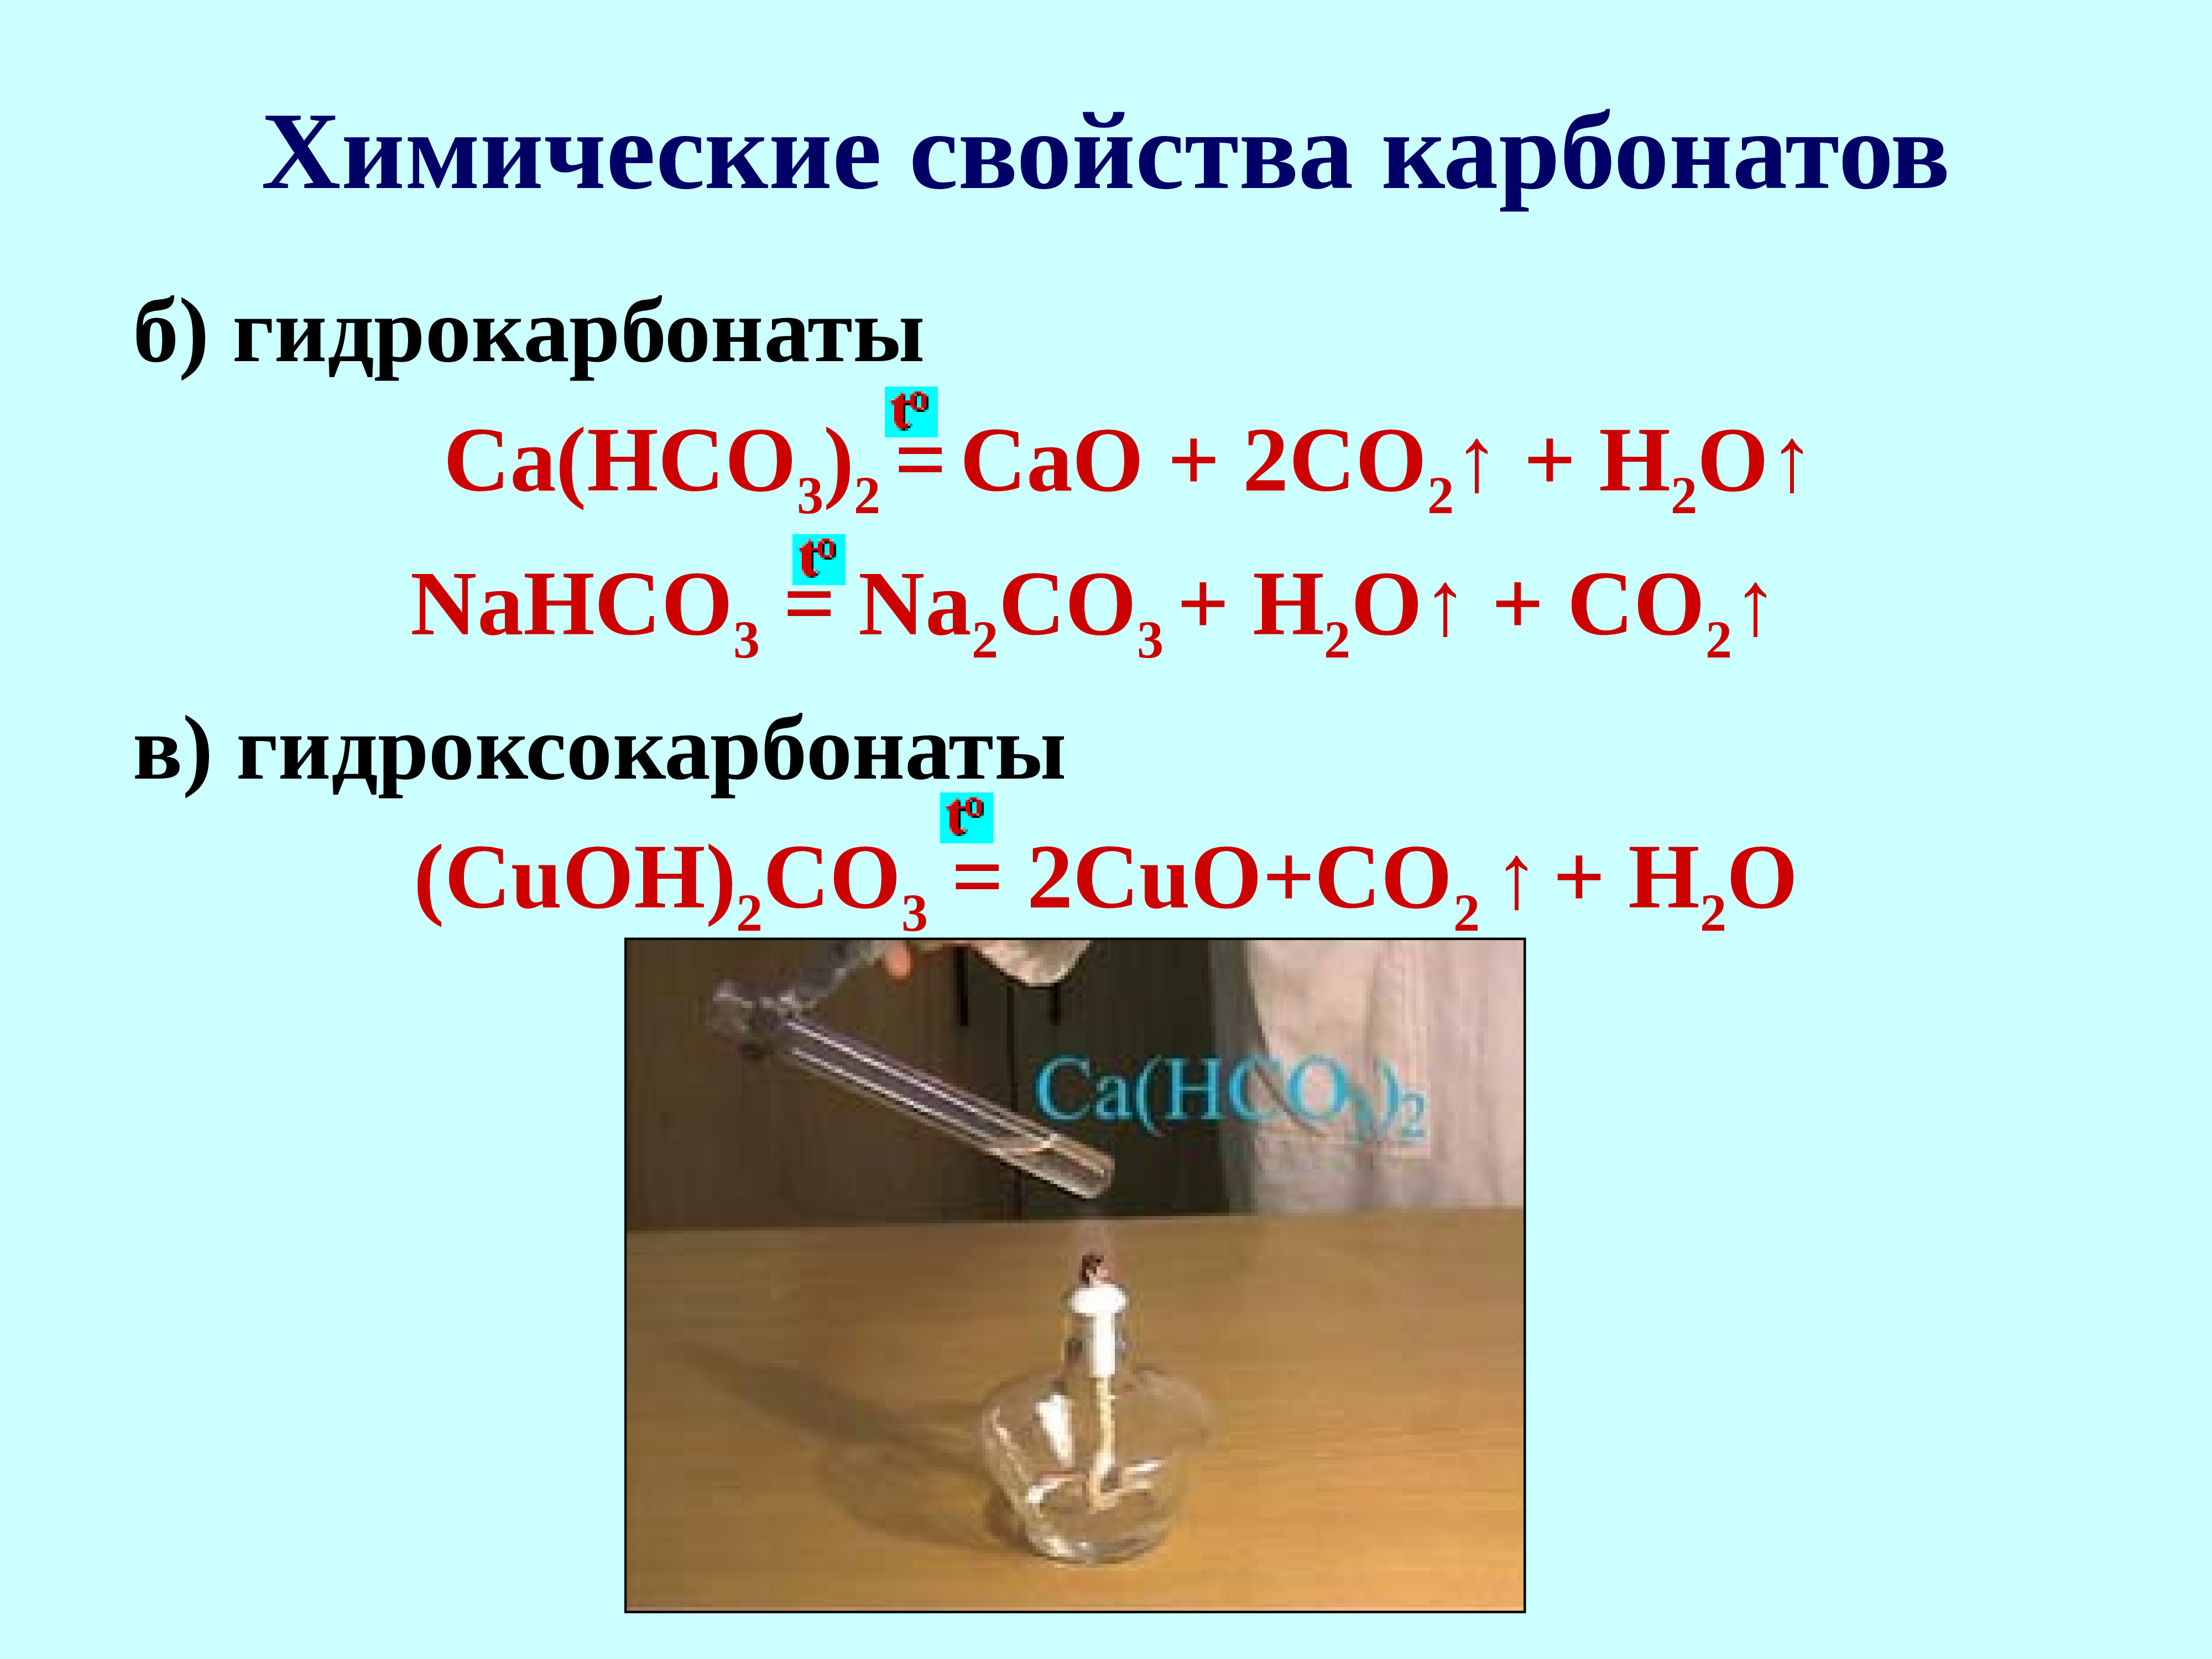 Гидрокарбонат свинца формула. Co2 + карбонат = гидрокарбонат. Химические свойства карбонатов. Получение карбонатов и гидрокарбонатов. Гидроксокарбонат меди(II).